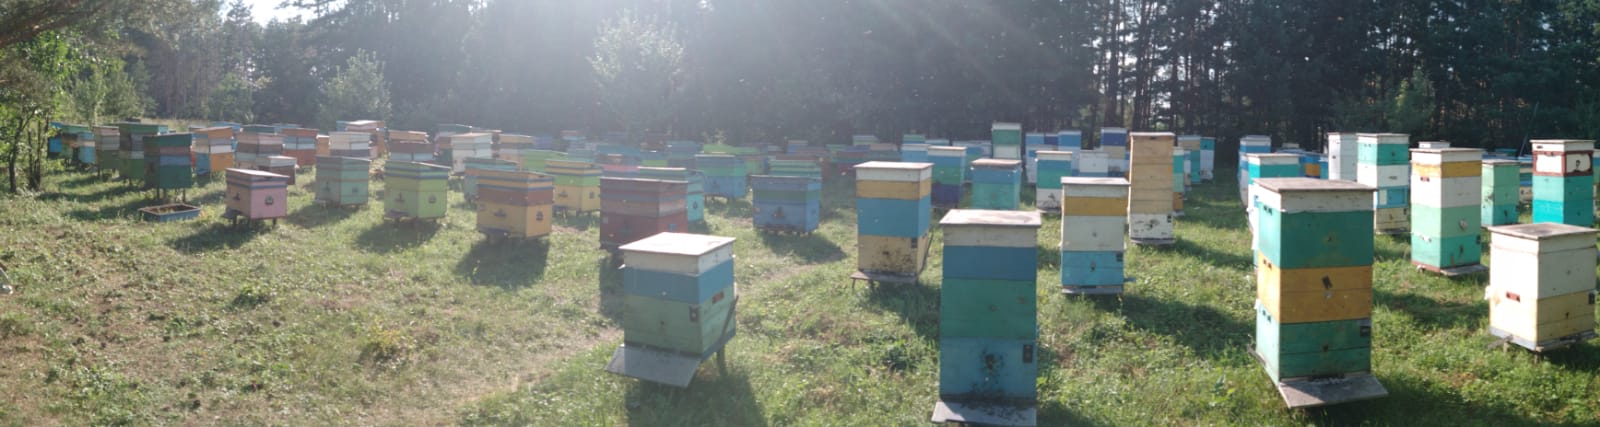 пчелиная пасека панорама